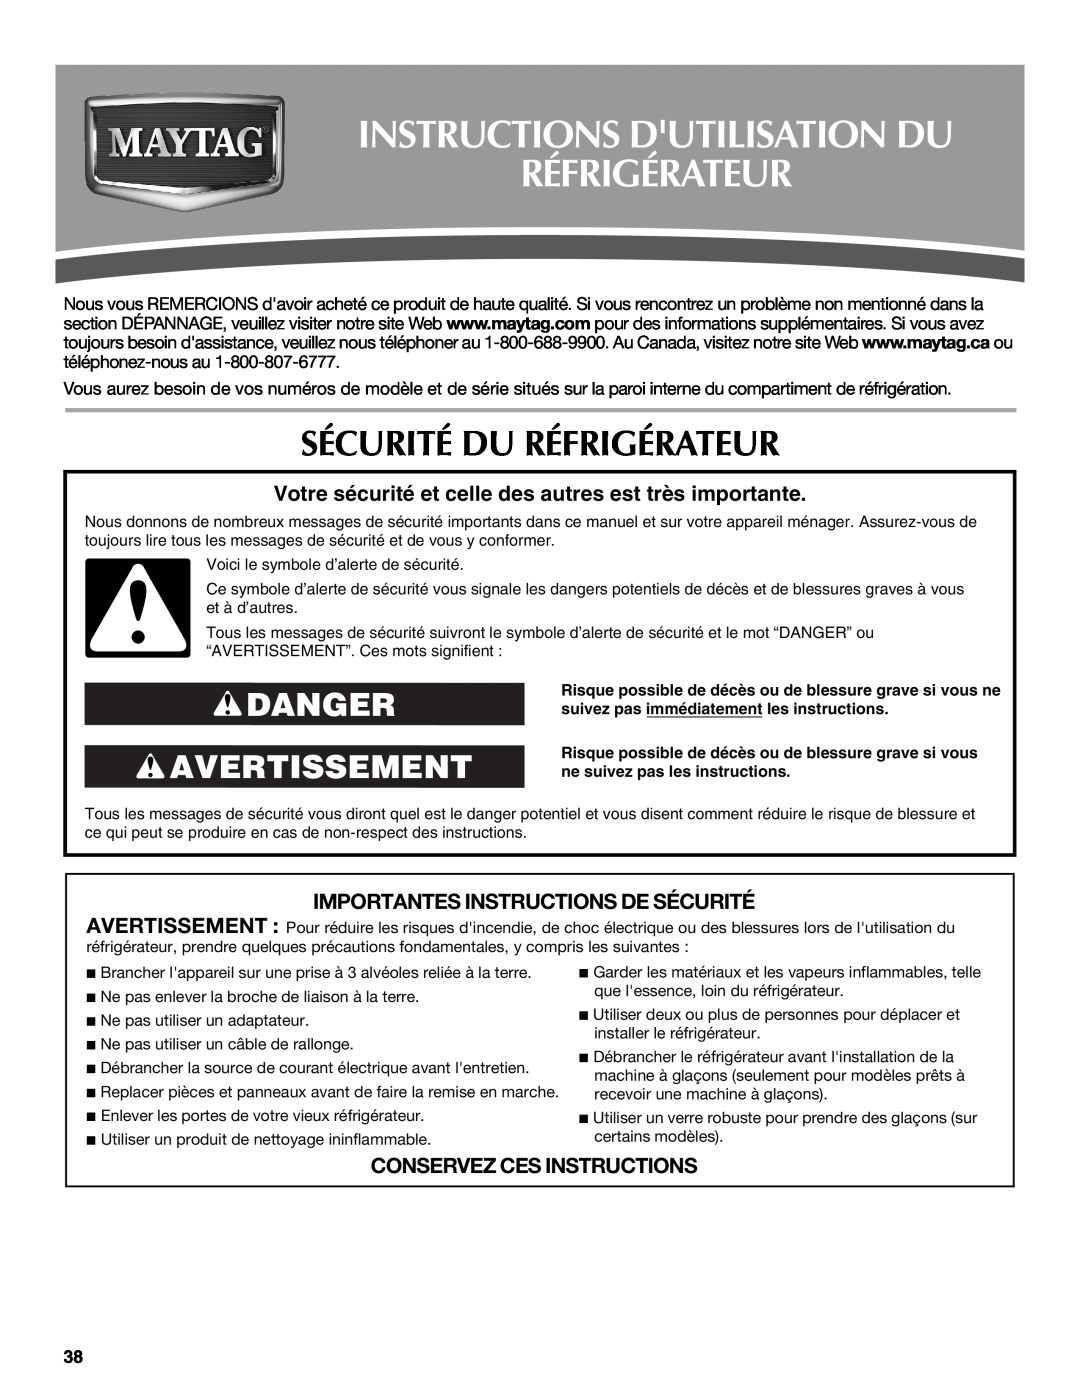 Maytag W10216897A, W10237808A Instructions Dutilisation Du Réfrigérateur, Sécurité Du Réfrigérateur, Danger Avertissement 